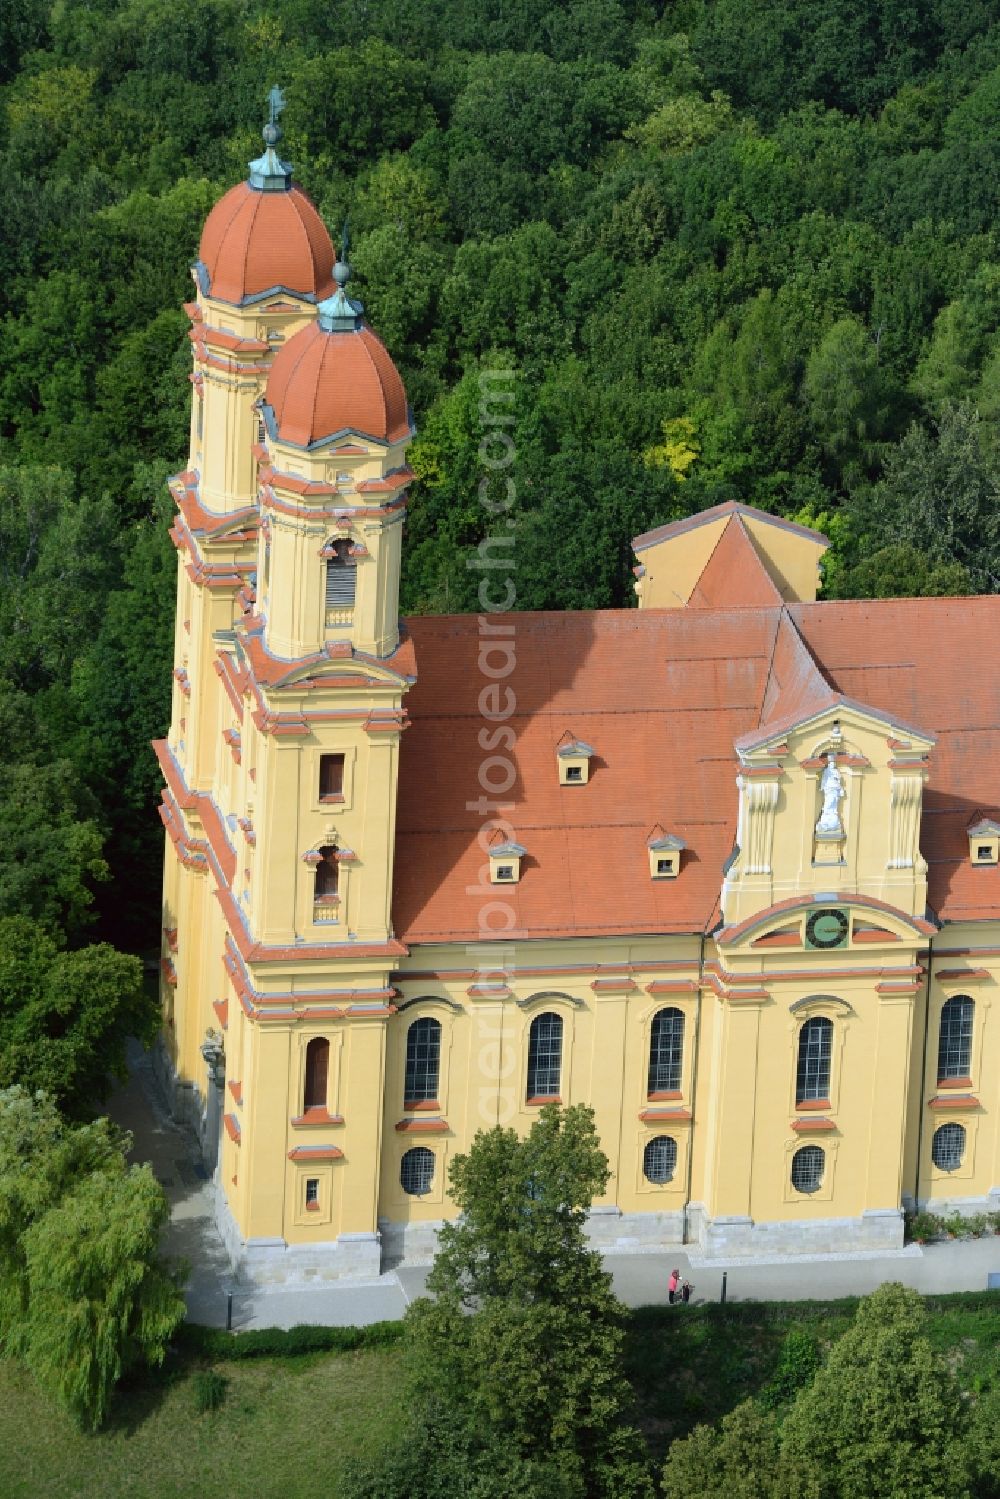 Aerial photograph Ellwangen (Jagst) - Church building Wallfahrtskirche Schoenenberg in Ellwangen (Jagst) in the state Baden-Wuerttemberg